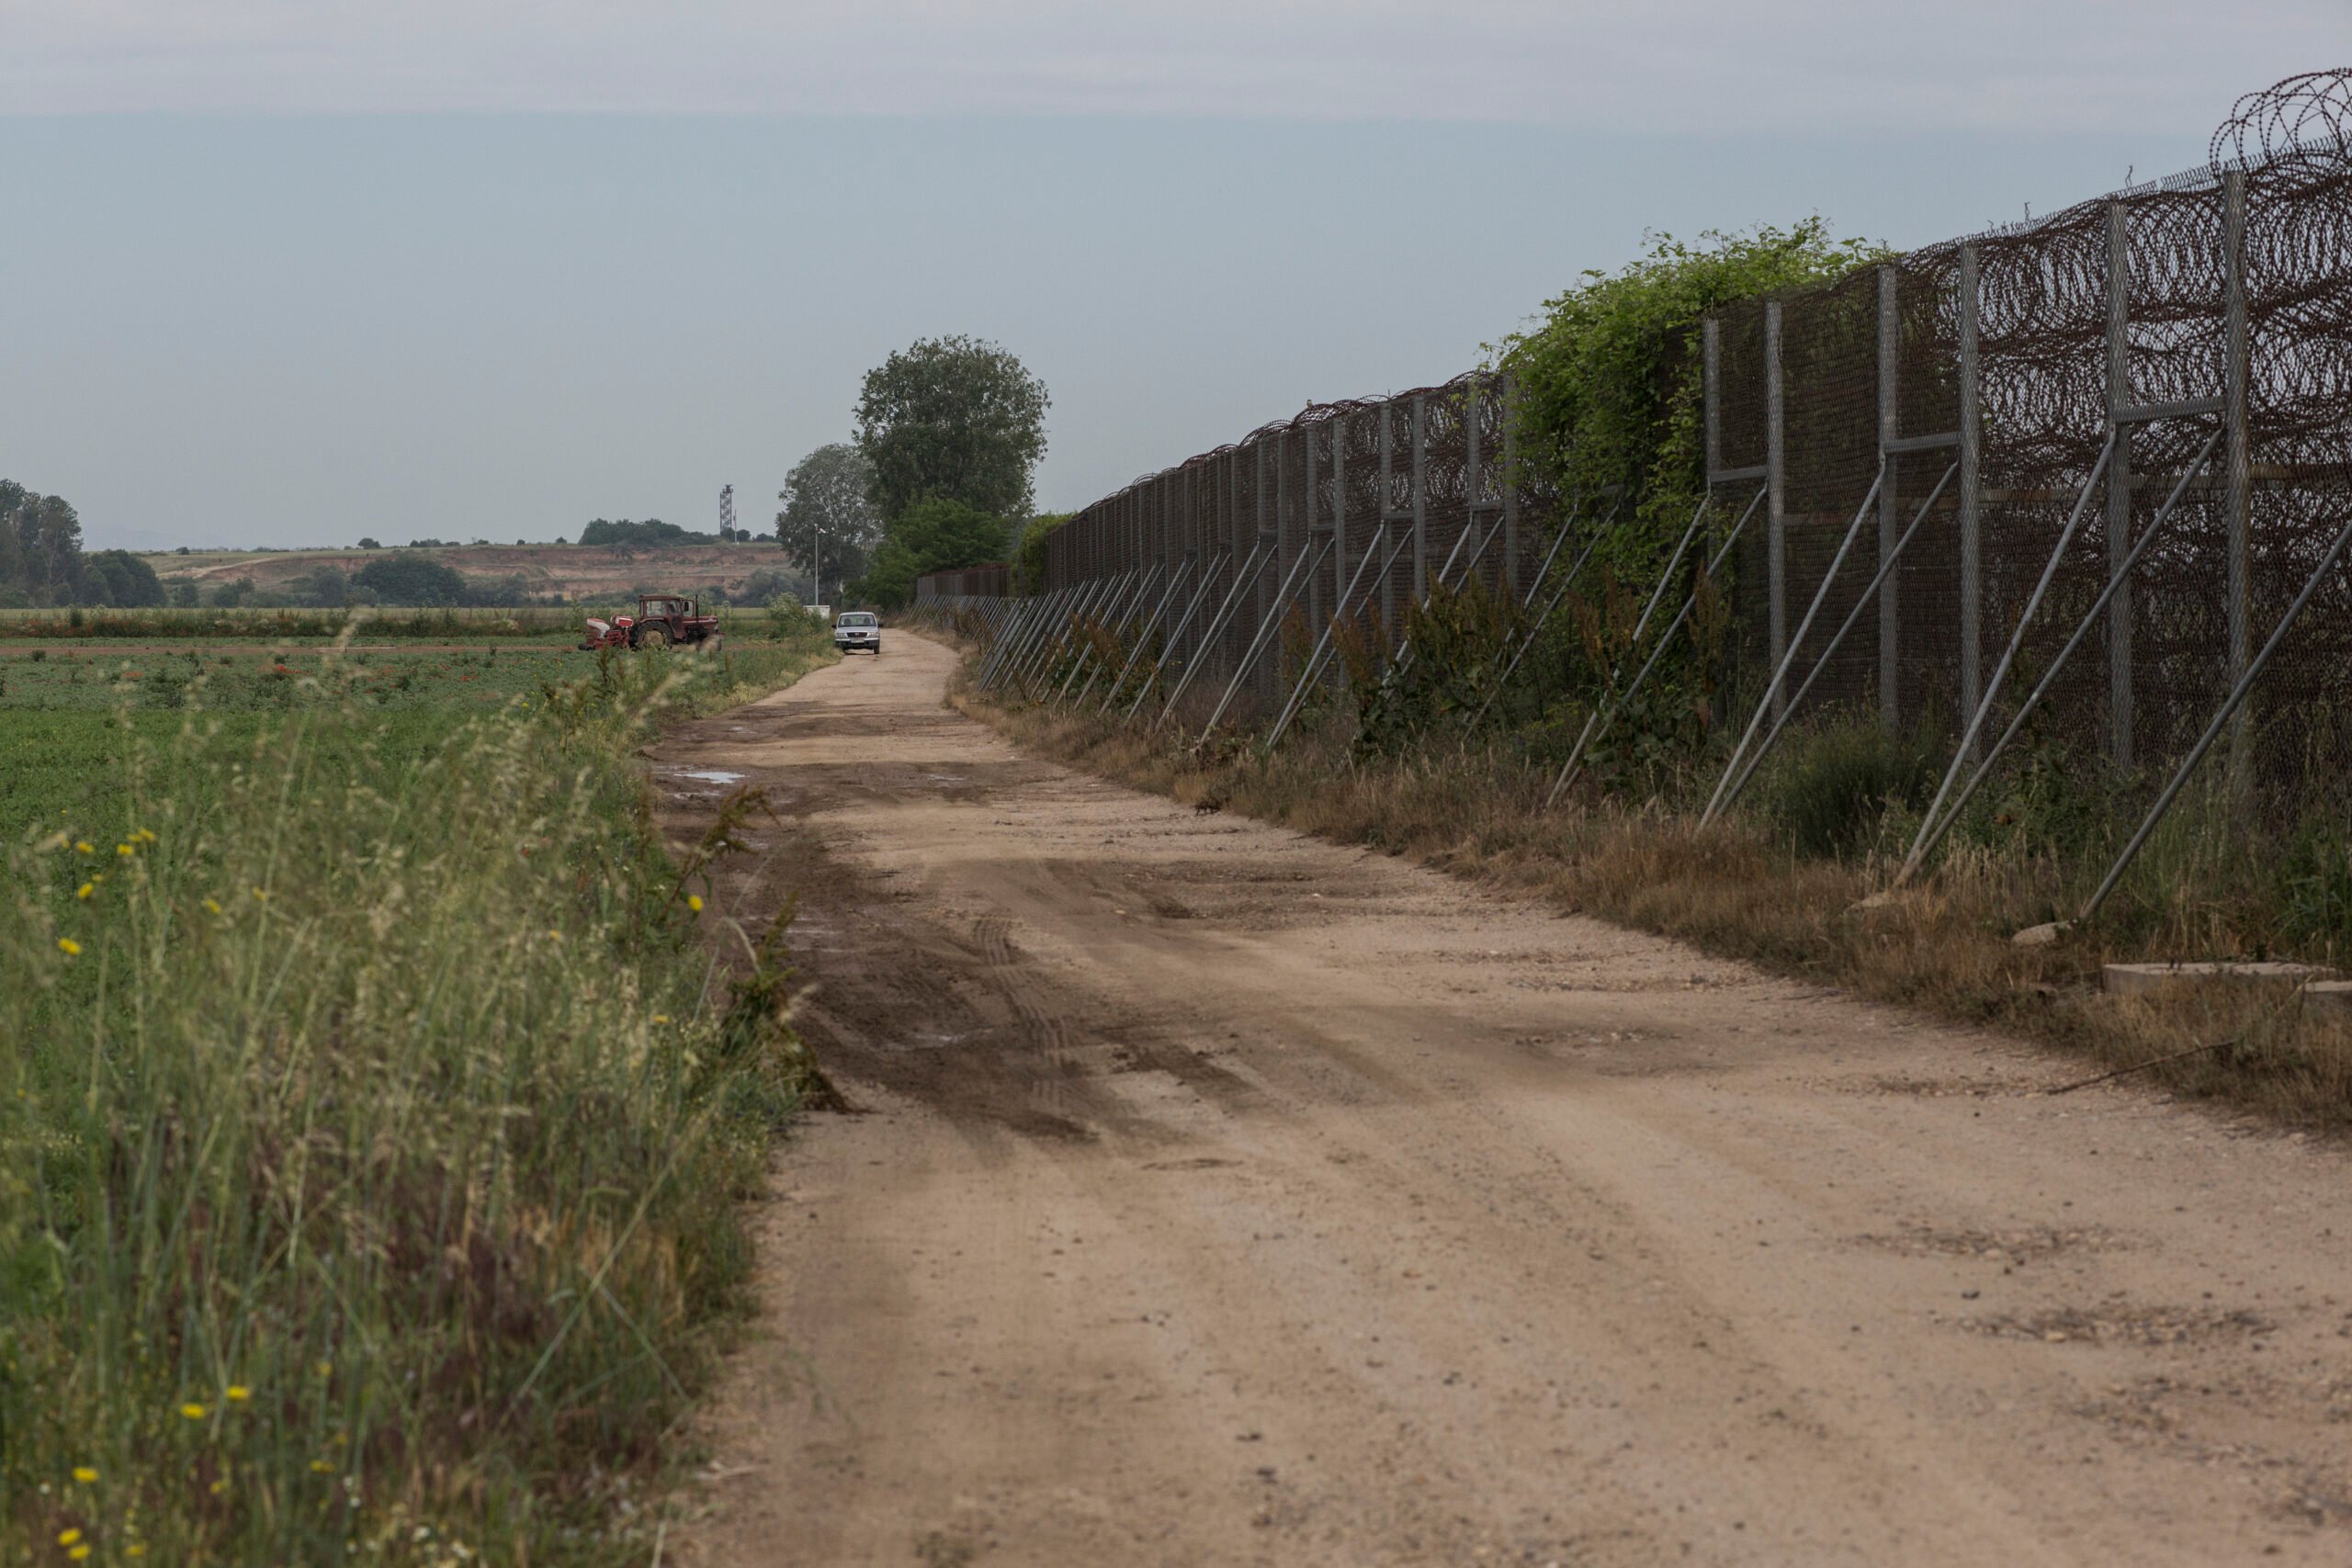 Een hek van prikkeldraad markeert de landsgrens tussen Griekenland en Turkije. © UNHCR/Socrates Baltagiannis